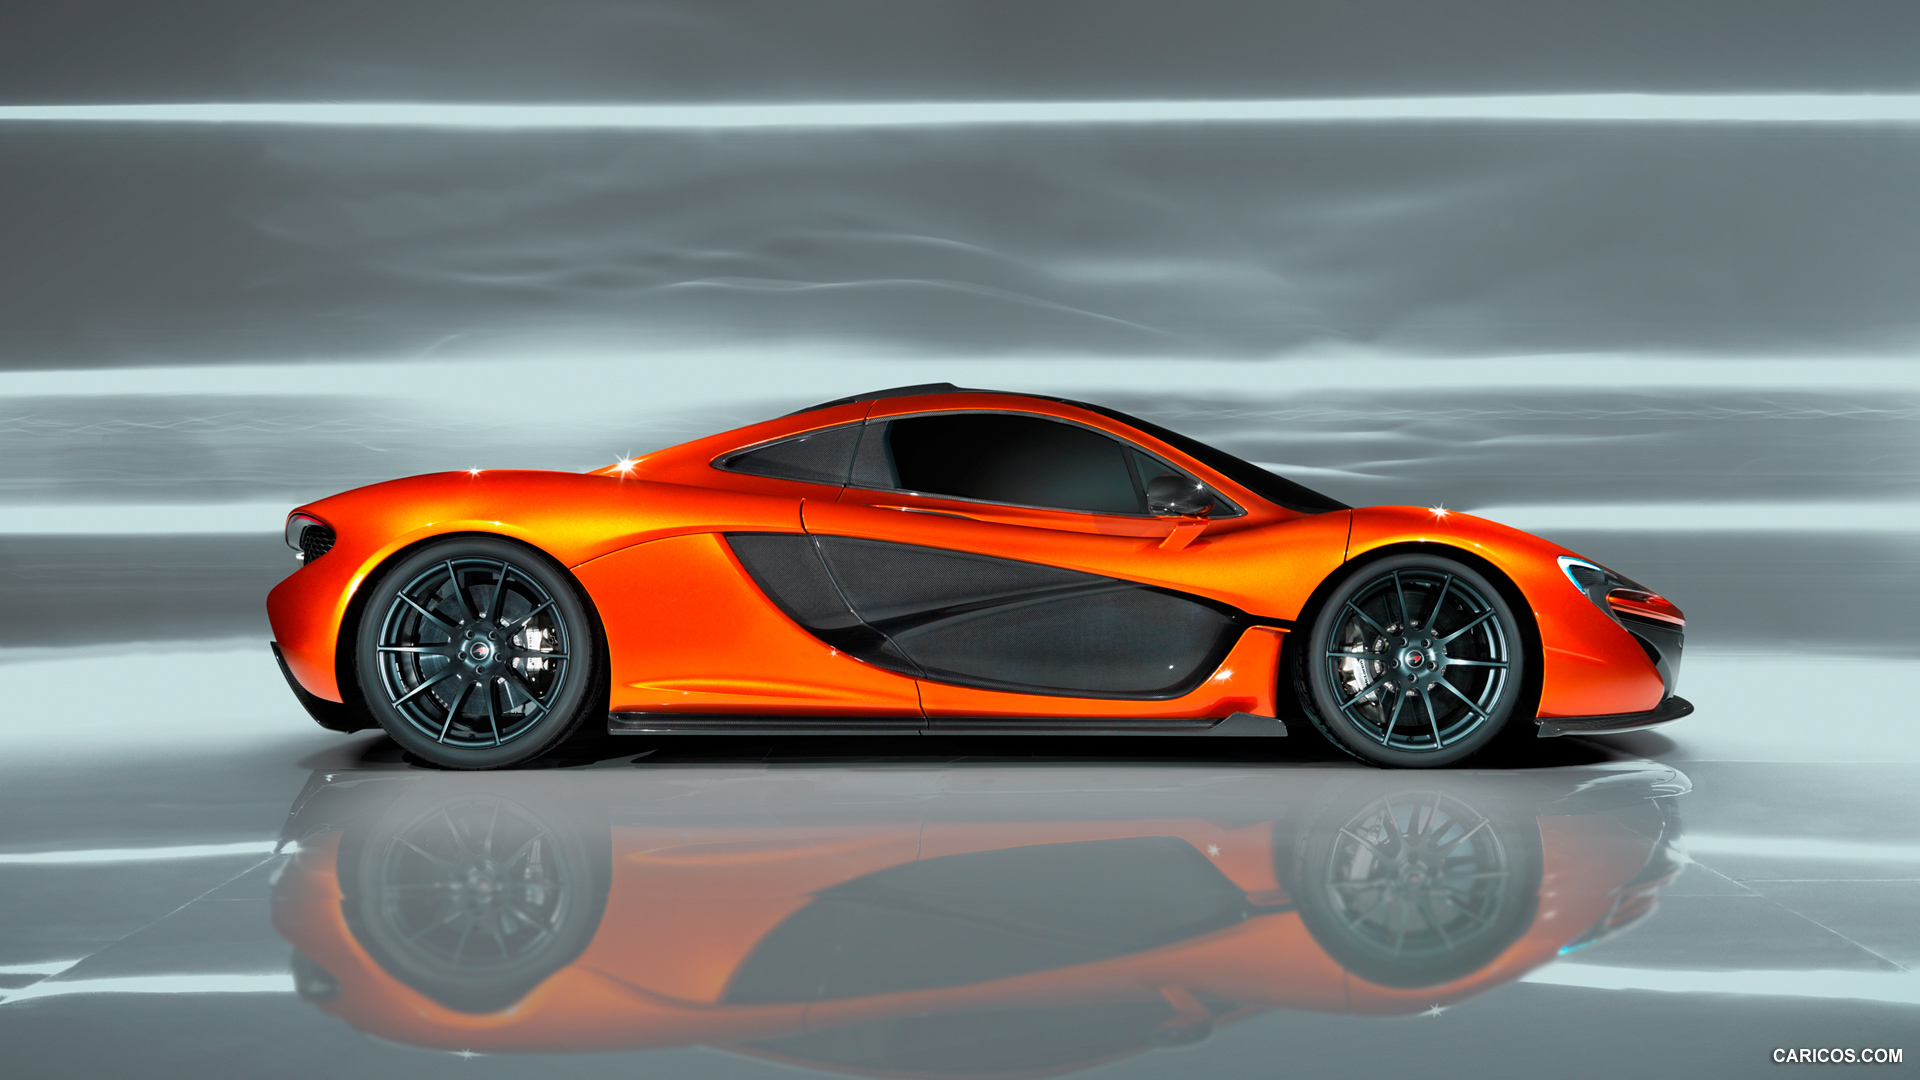 2012 McLaren P1 Concept  - Side, #1 of 15